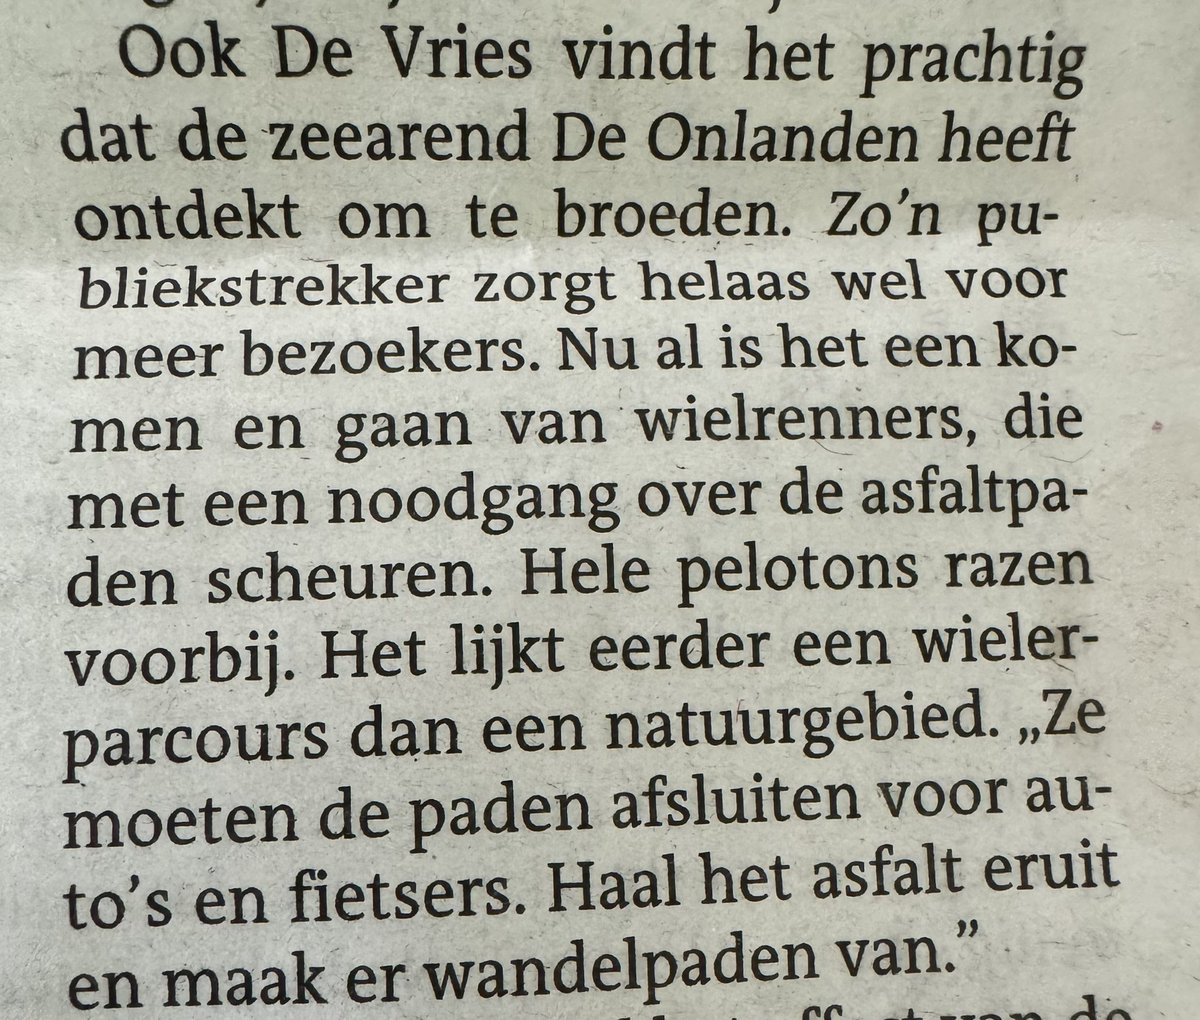 Haha in het @dvhn_nl gaat het over de zeearend en wordt er ook een bezoeker geïnterviewd. Die heeft onderstaande opmerking! Net of de zeearend meer groepen wielrenners trekken 😂😂😂

#zeearend #wielrennen